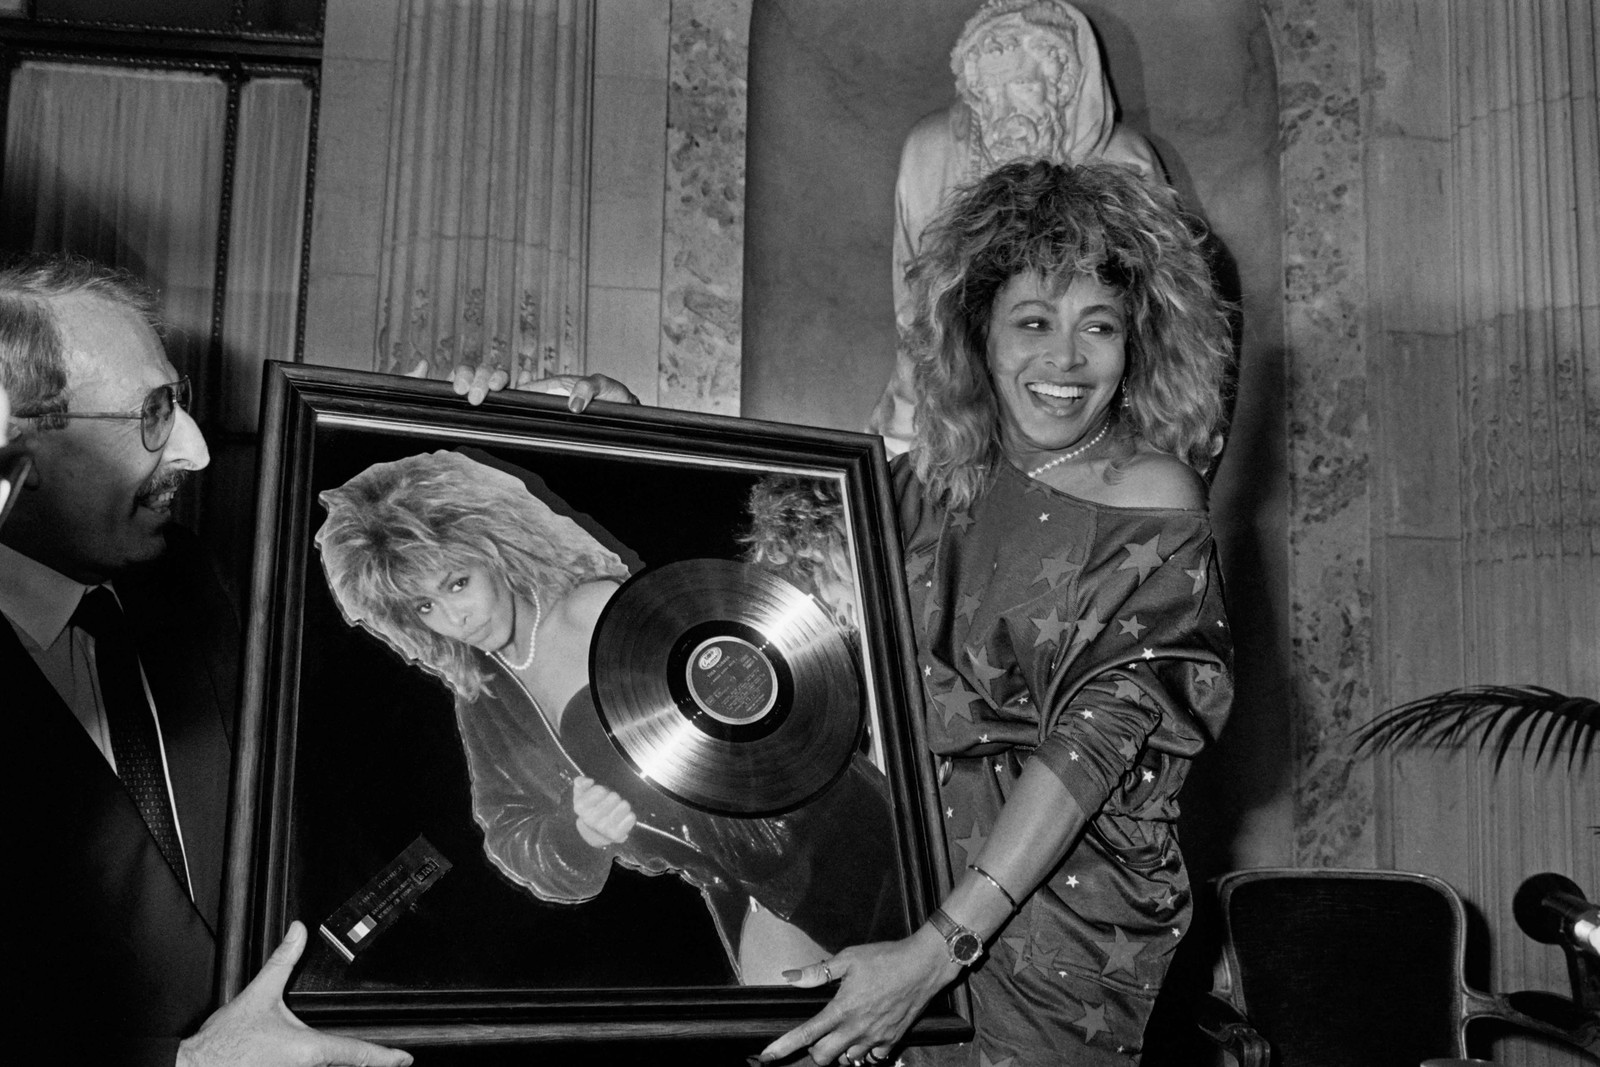 A cantora norte-americana Tina Turner recebe o Disco de Ouro das mãos do presidente da Pathé Marconi, Guy Deluz (à esquerda), em 8 de outubro de 1986, em Paris. — Foto: Georges BENDRIHEM / AFP